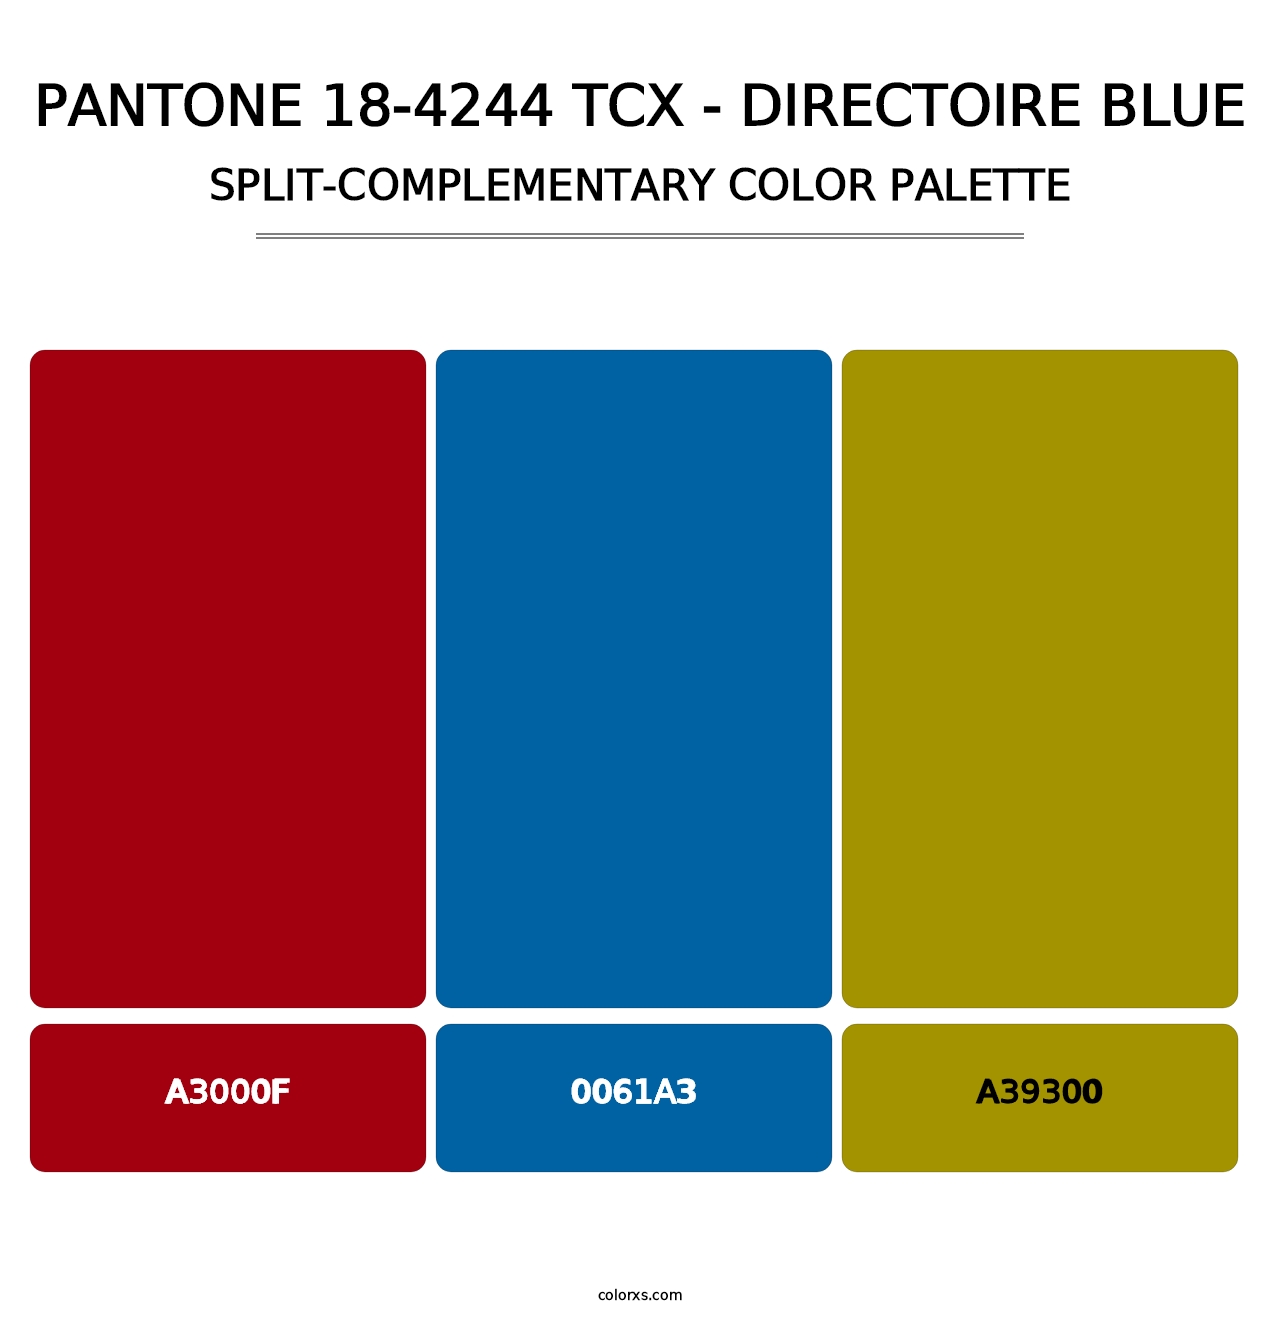 PANTONE 18-4244 TCX - Directoire Blue - Split-Complementary Color Palette